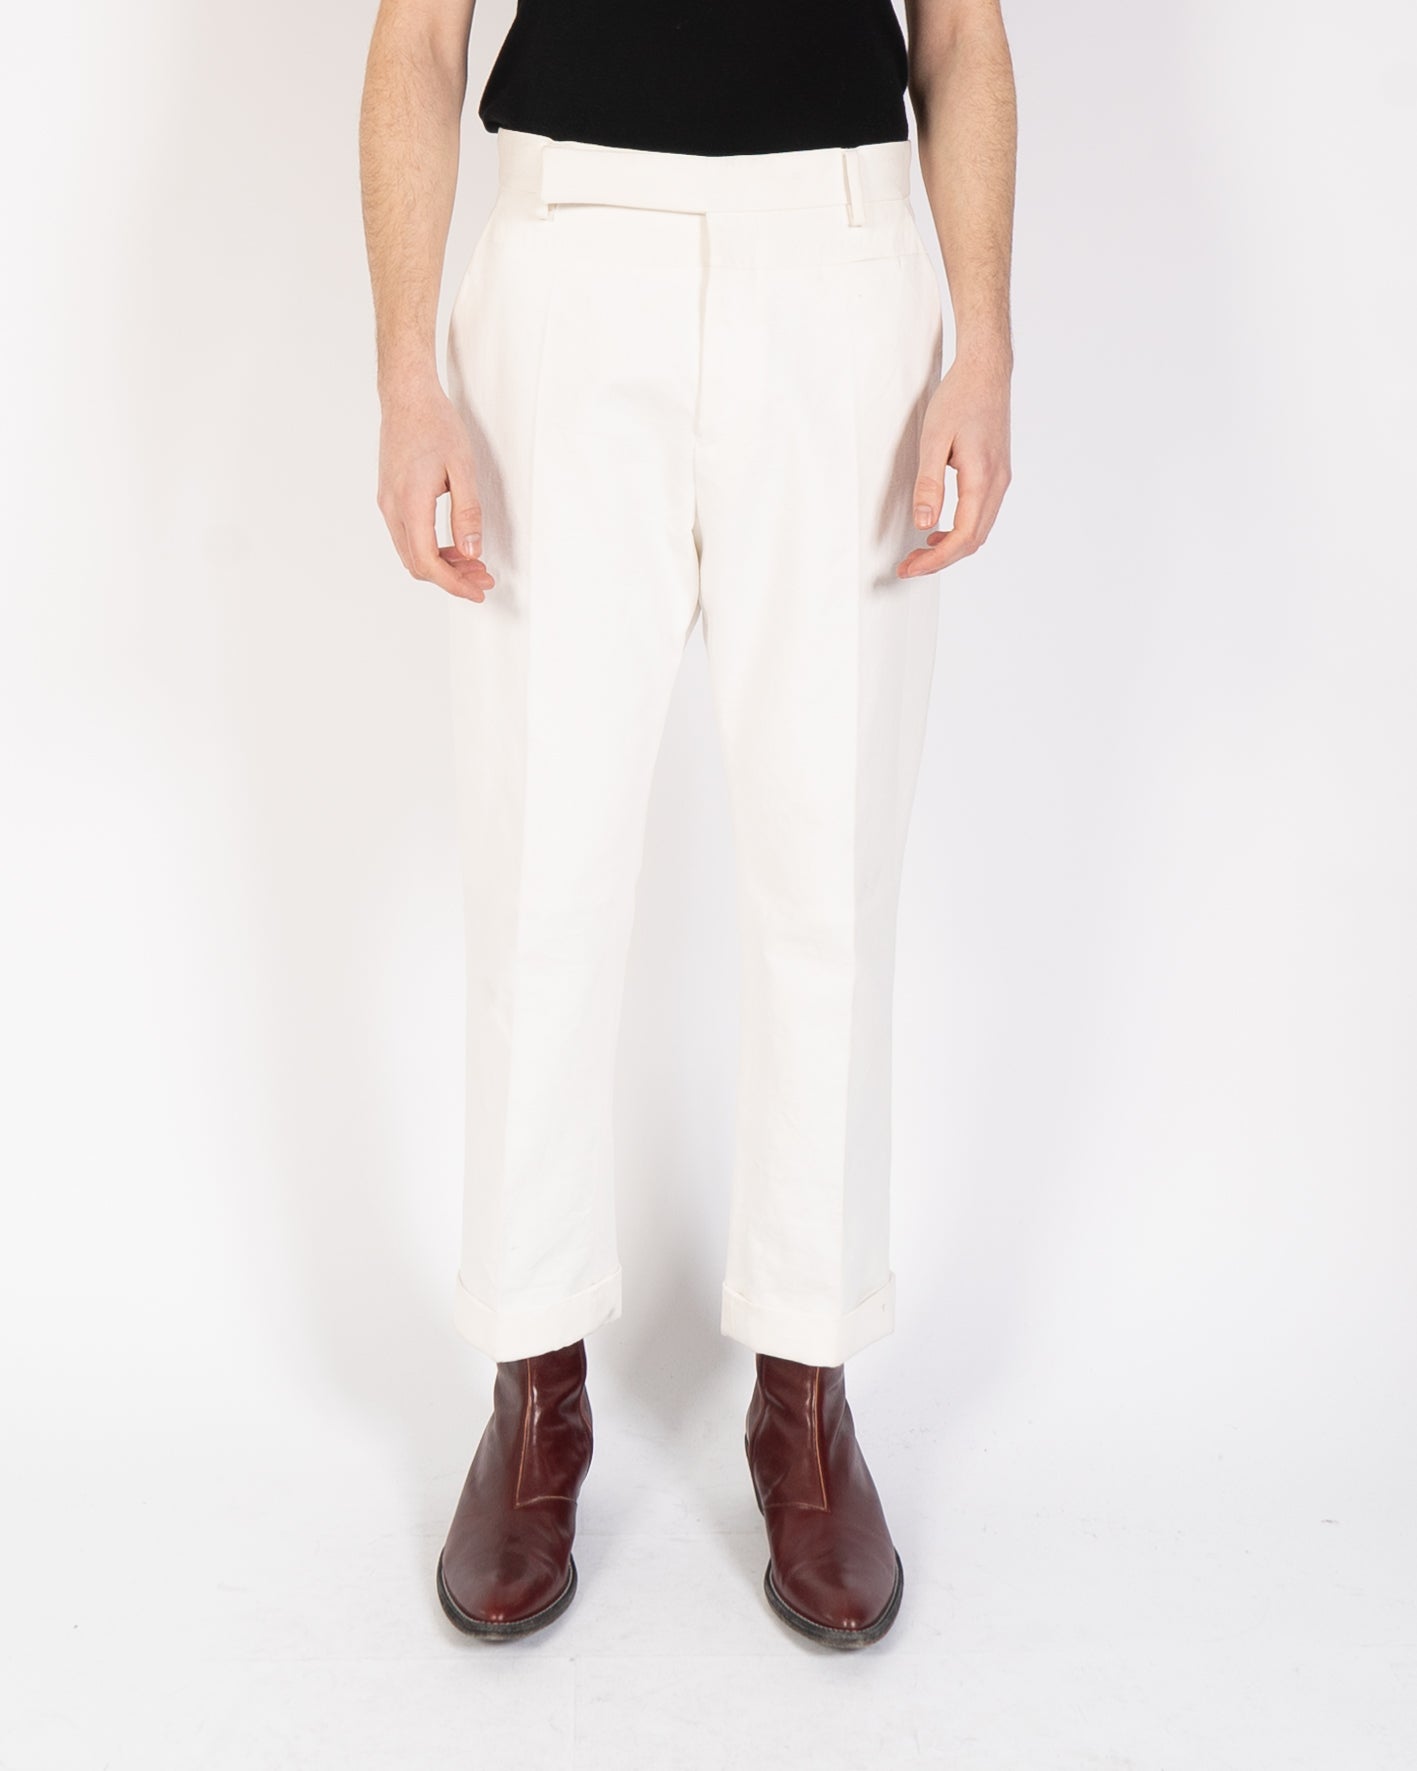 FW19 White Cotton Trousers with Chevron Waistband